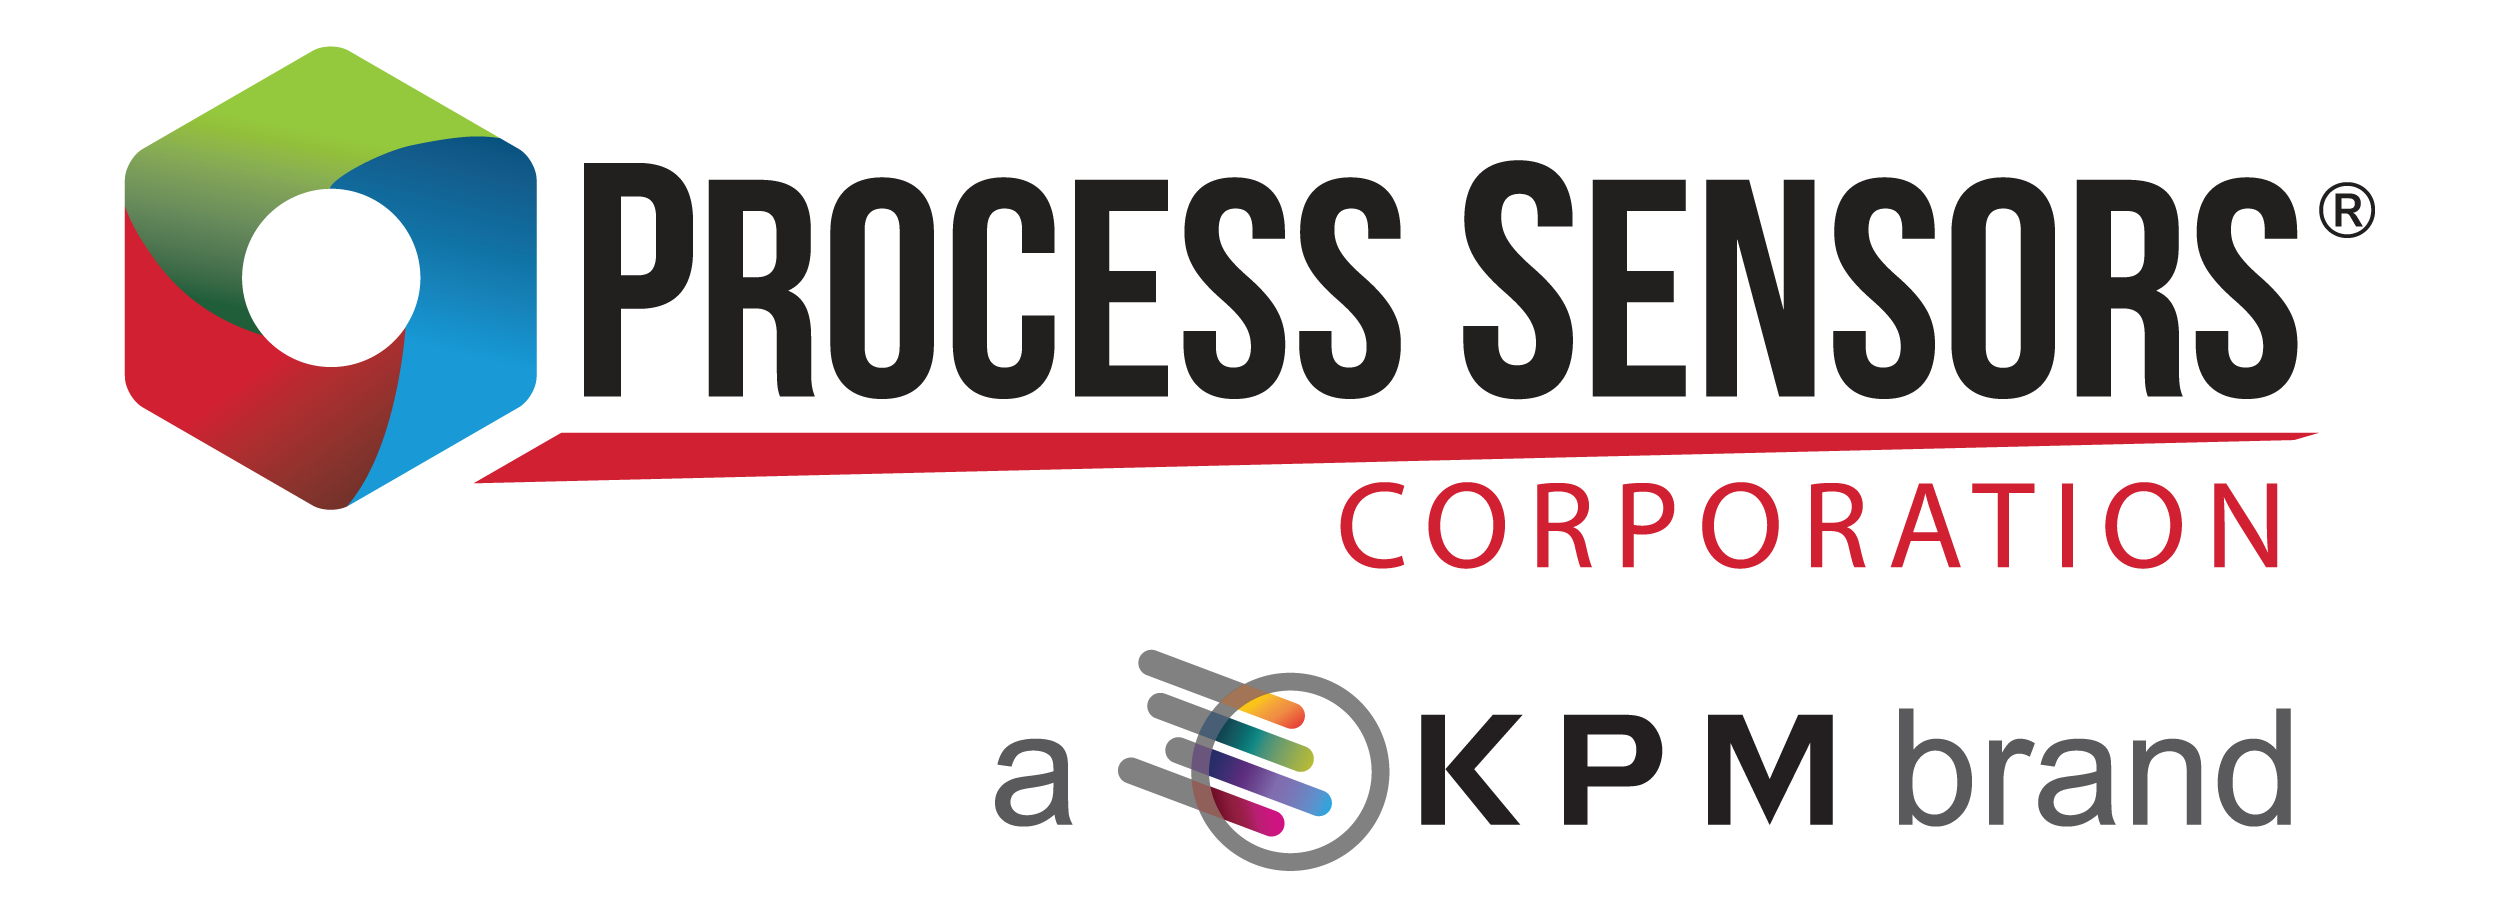 Process sensors kpm